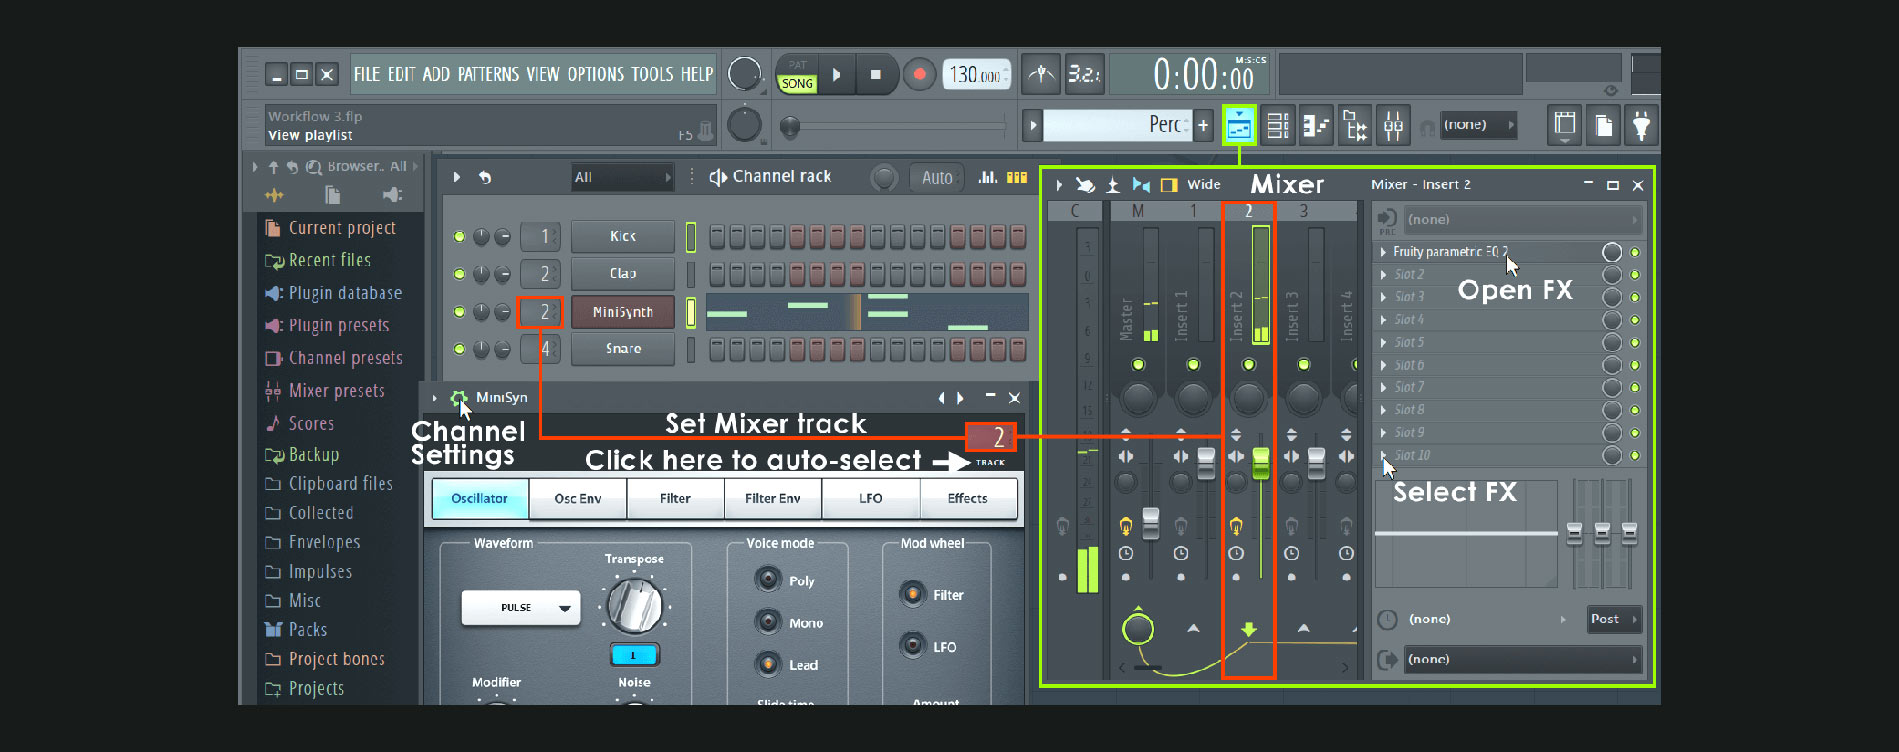 Пак звуков для fl. Моно в фл студио. Инструменты для FL Studio 20. Fruity loops программа Старая версия. Внешний вид FL Studio 20.